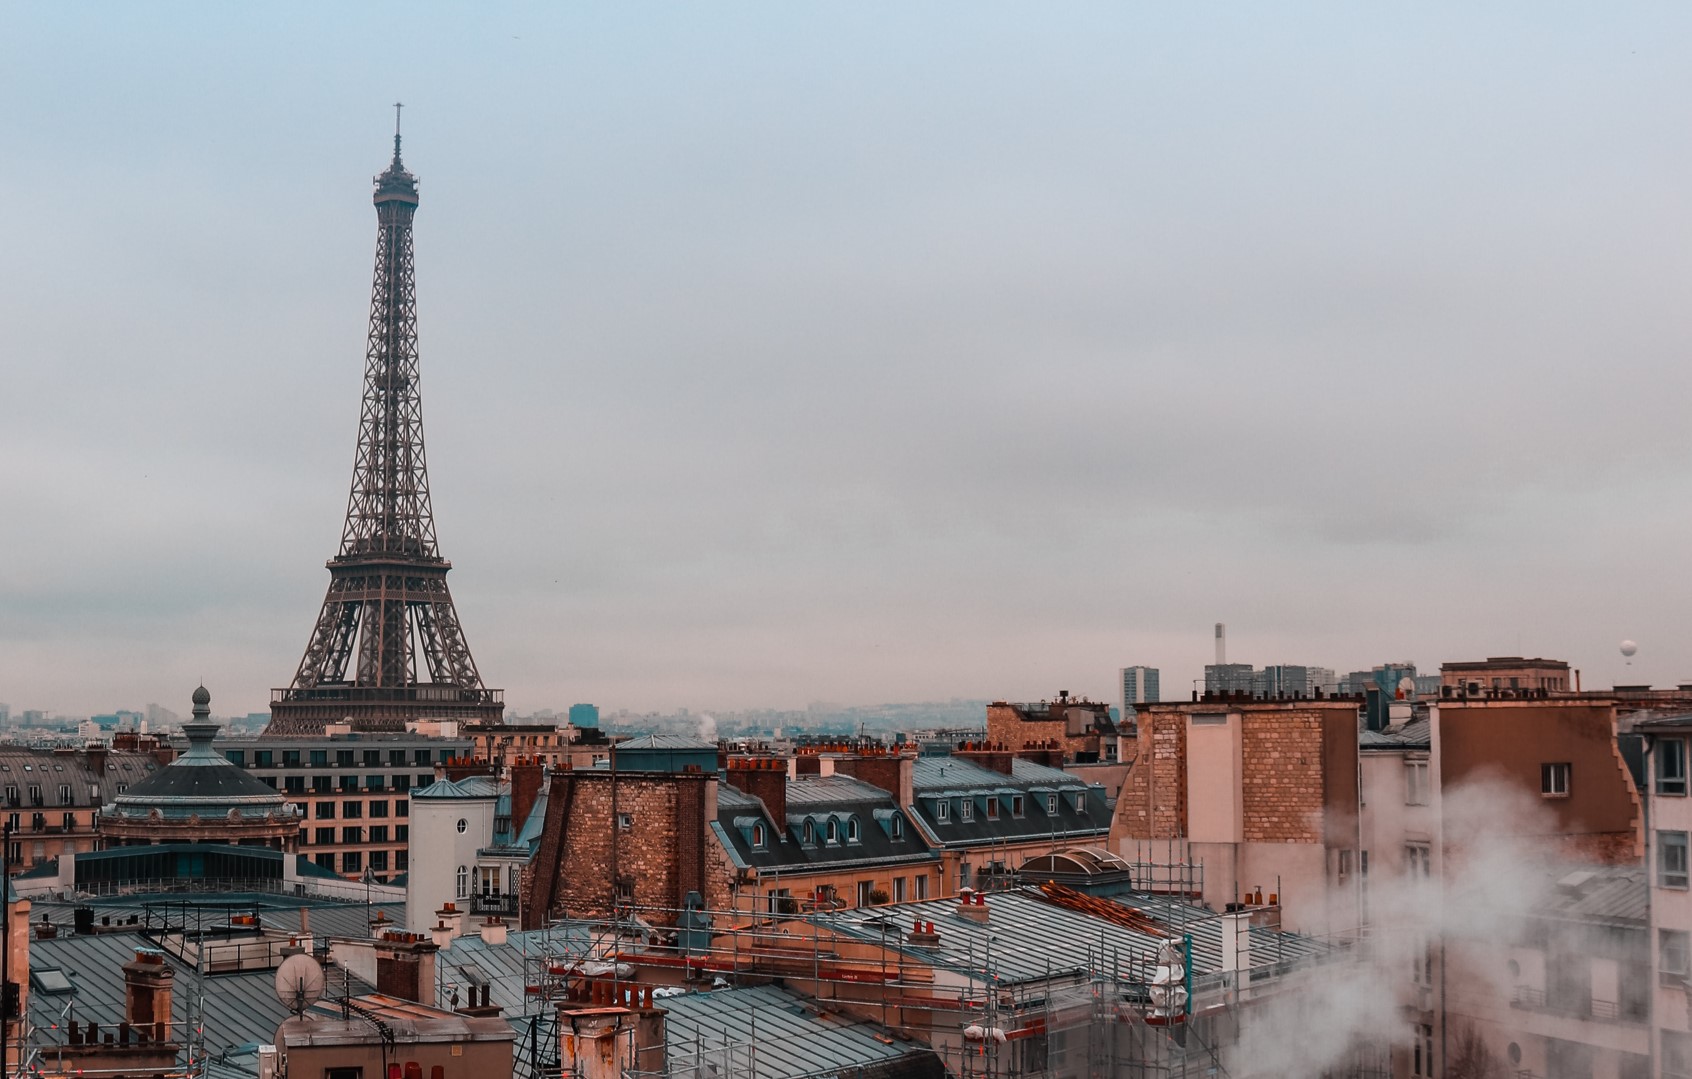 Paris rooftops, France